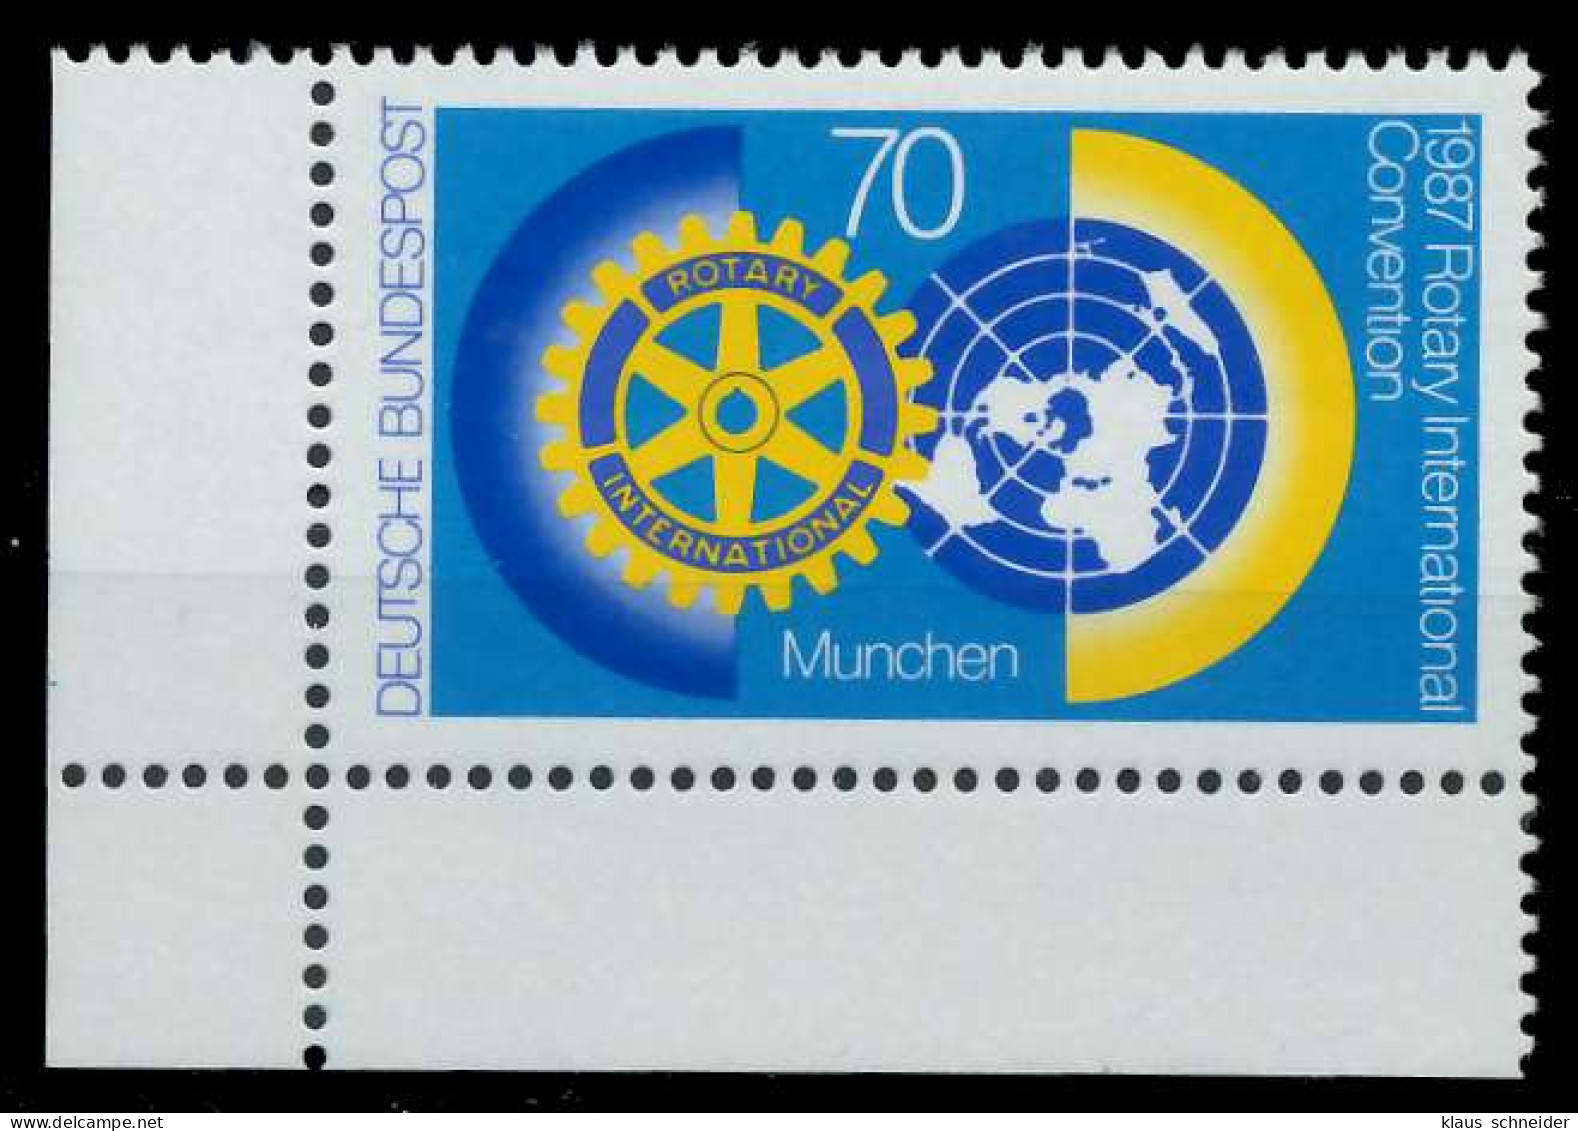 BRD 1987 Nr 1327 Postfrisch ECKE-ULI X85917A - Nuevos